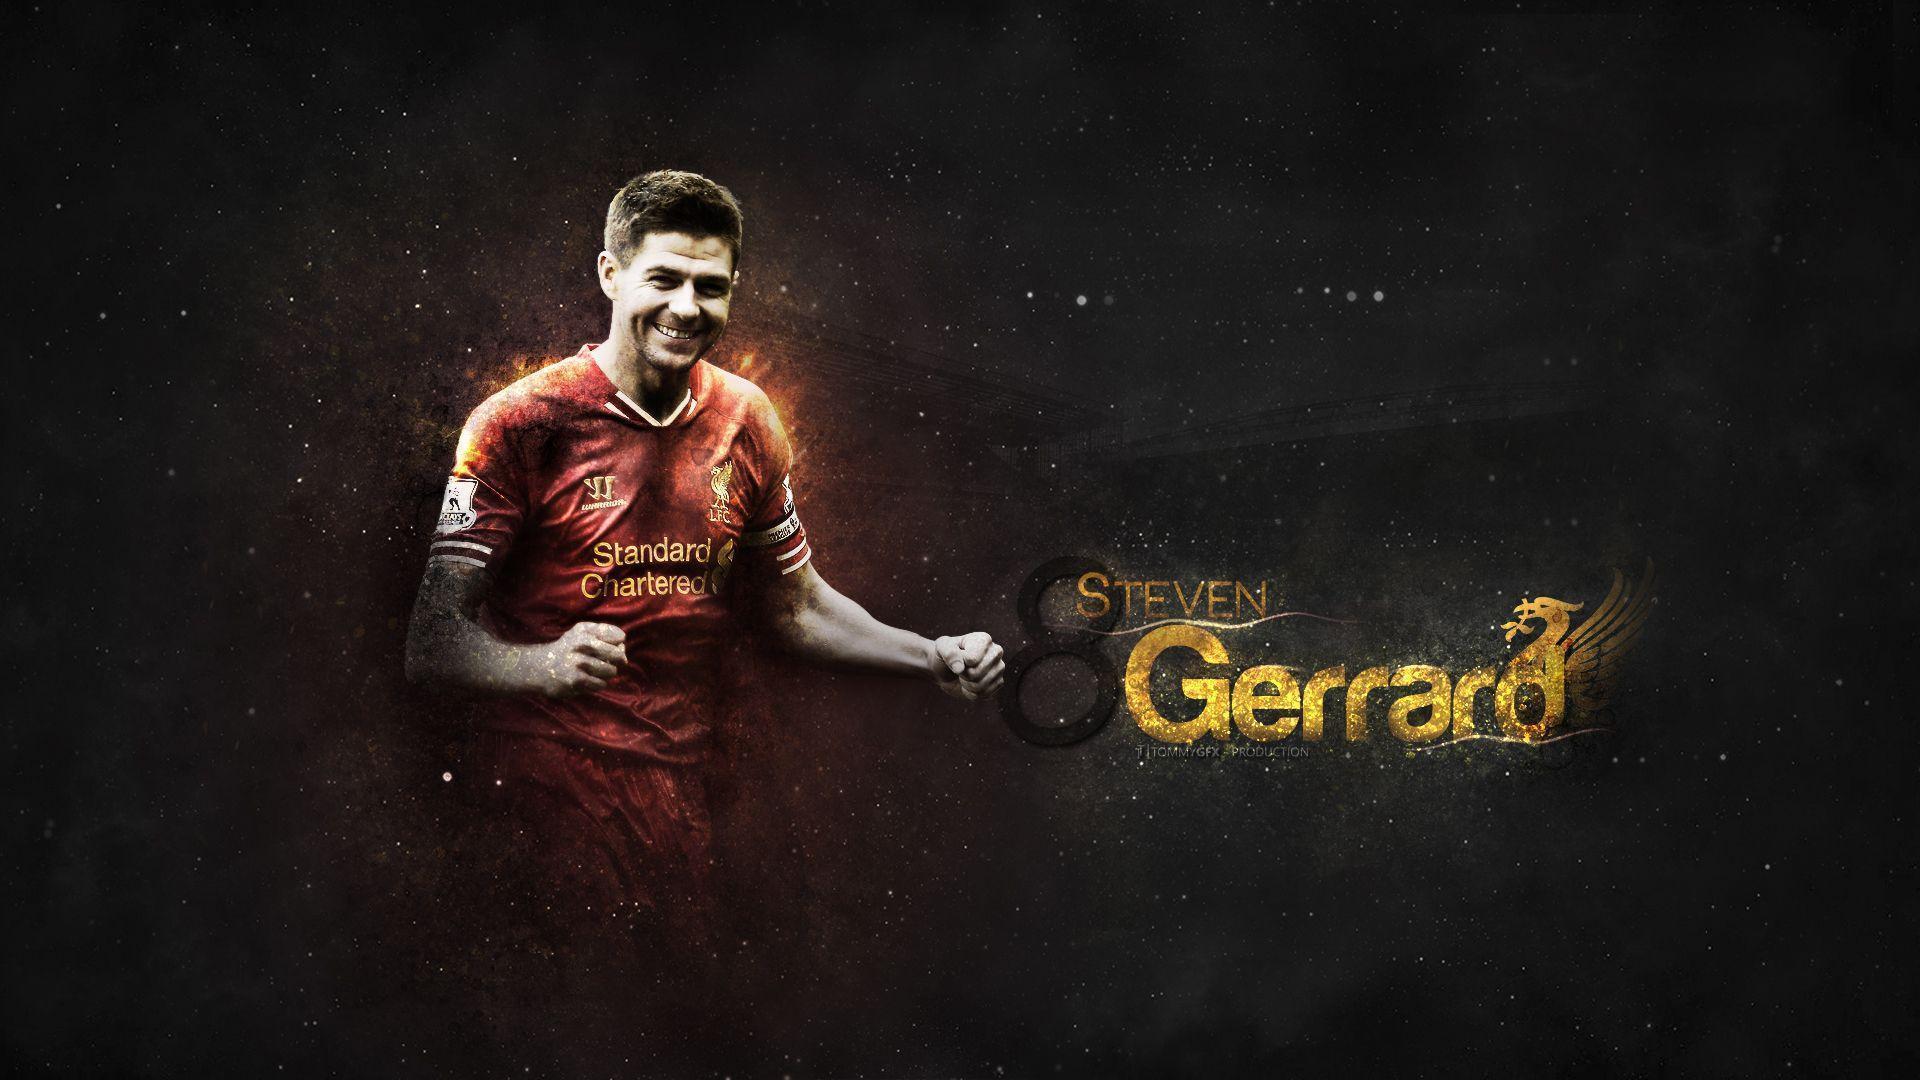 Steven Gerrard. HD Football Wallpaper